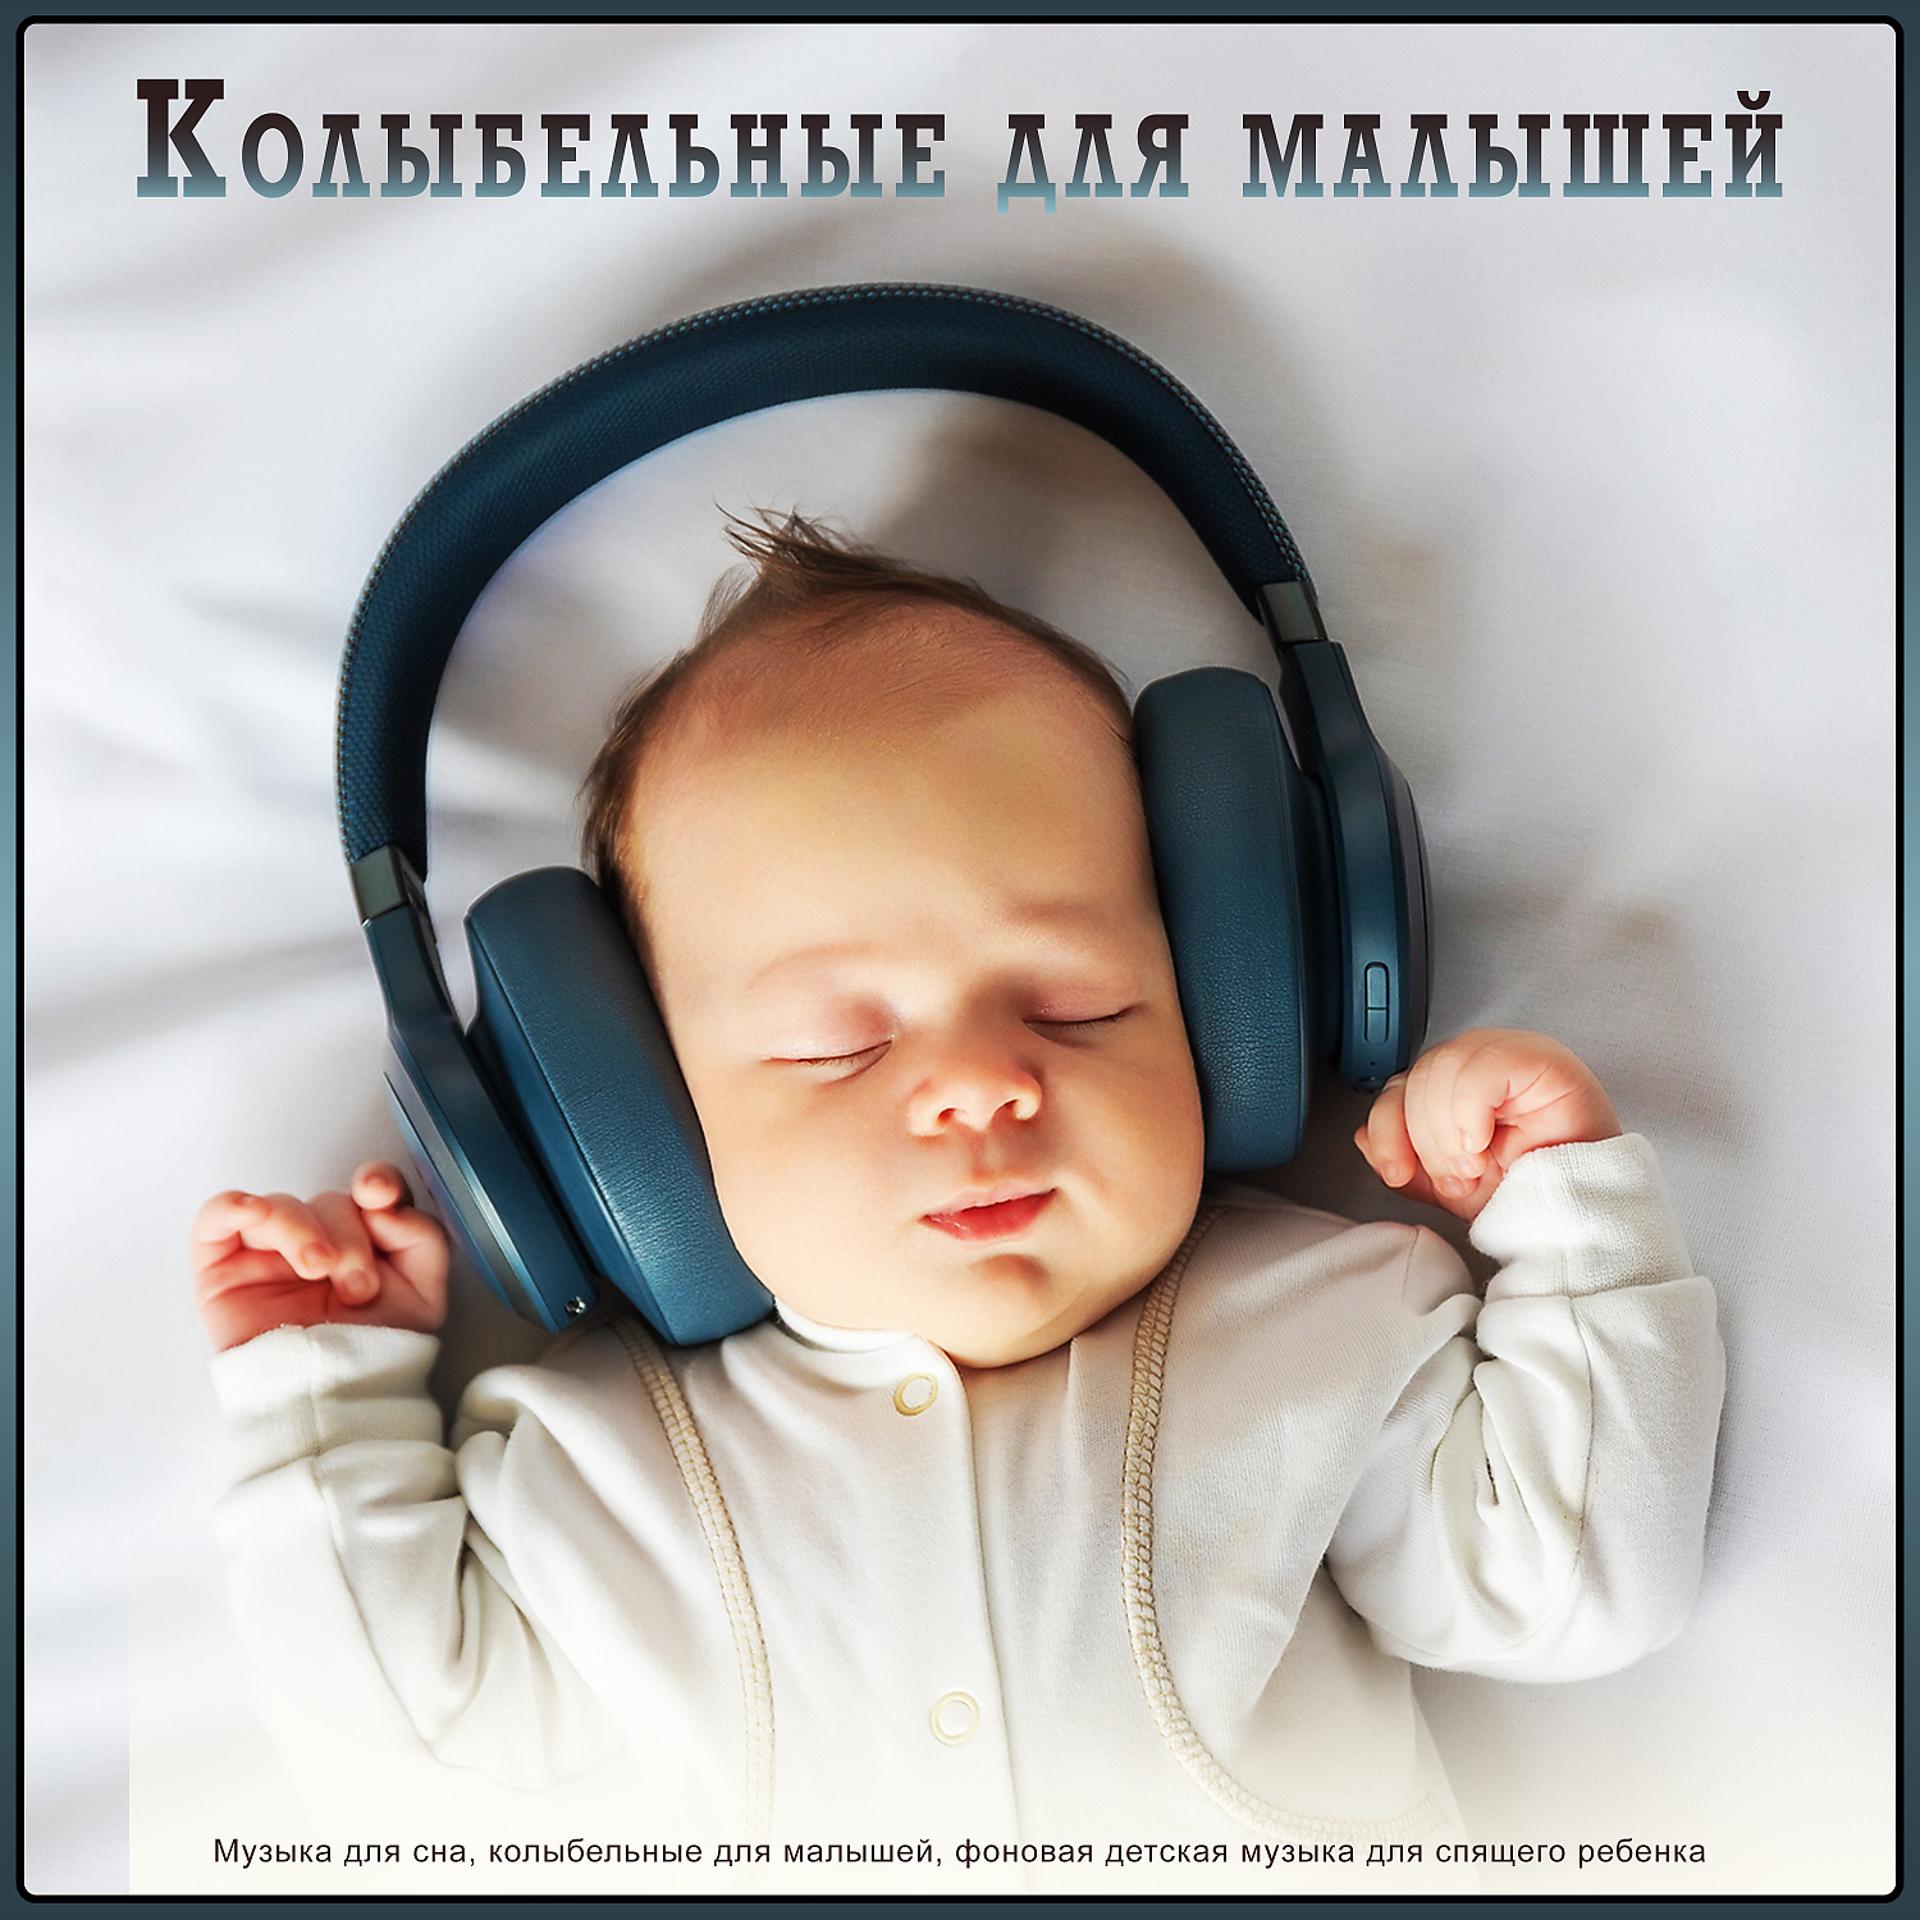 Мелодия успокой детей. Музыка для сна младенца. Музыка для сна для малышей. Мелодии для засыпания малышей. Колыбельная для малышей успокаивающая.